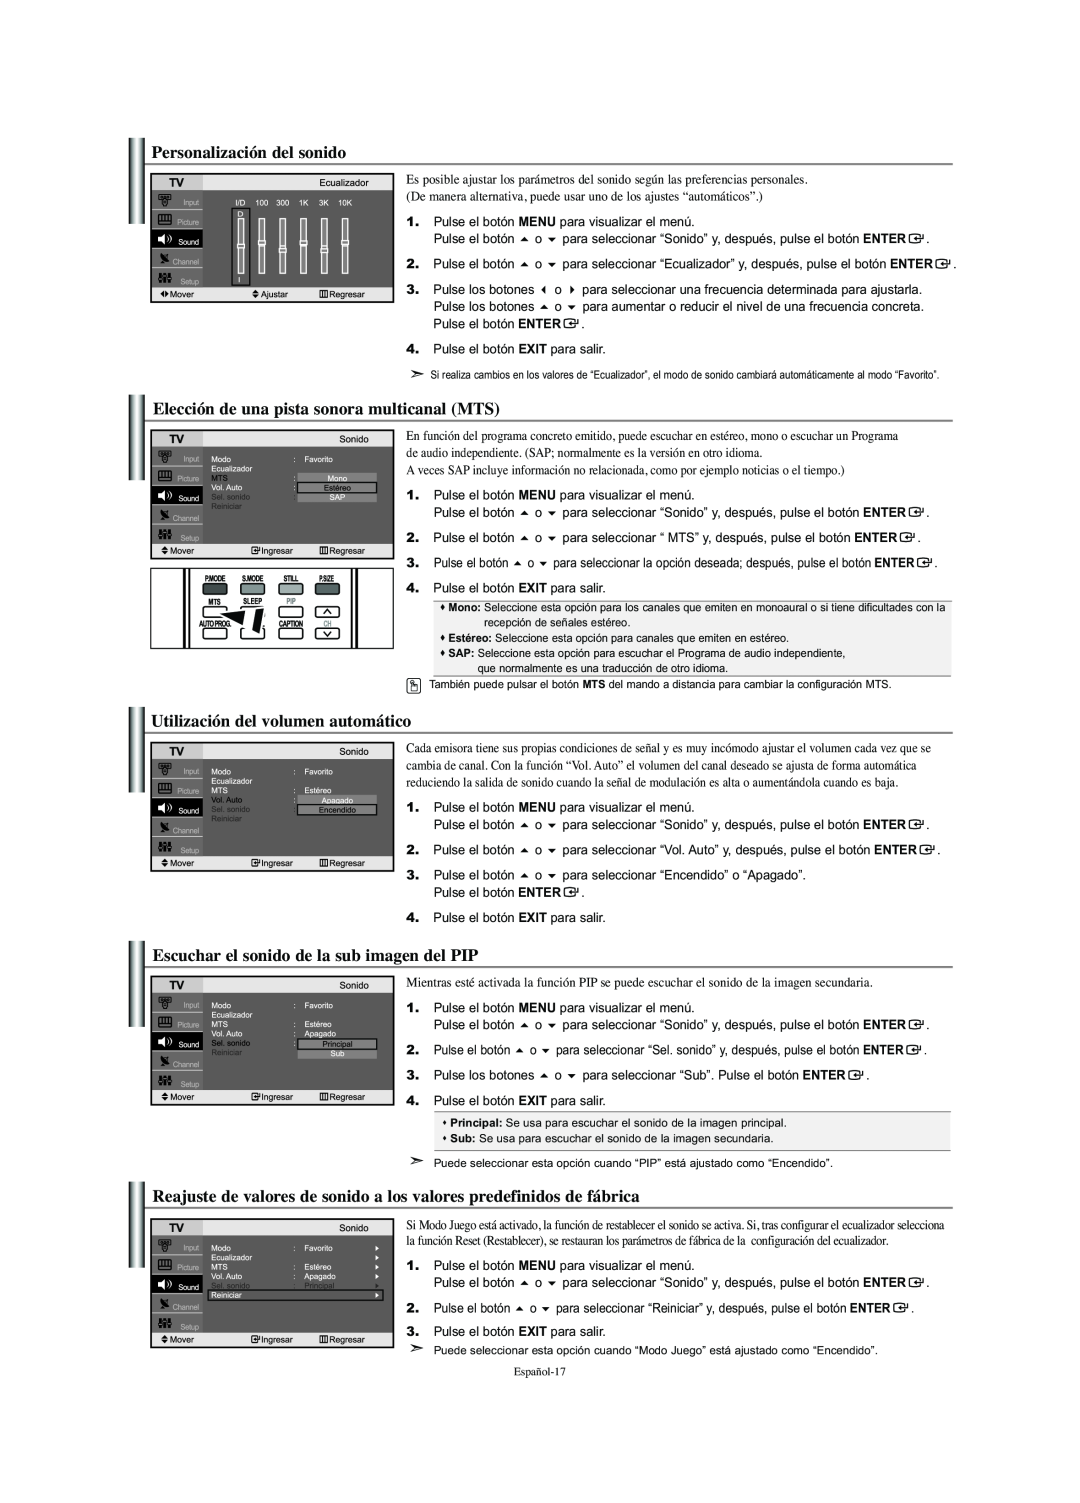 Samsung LN-S2341W manual Personalización del sonido, Elección de una pista sonora multicanal MTS 